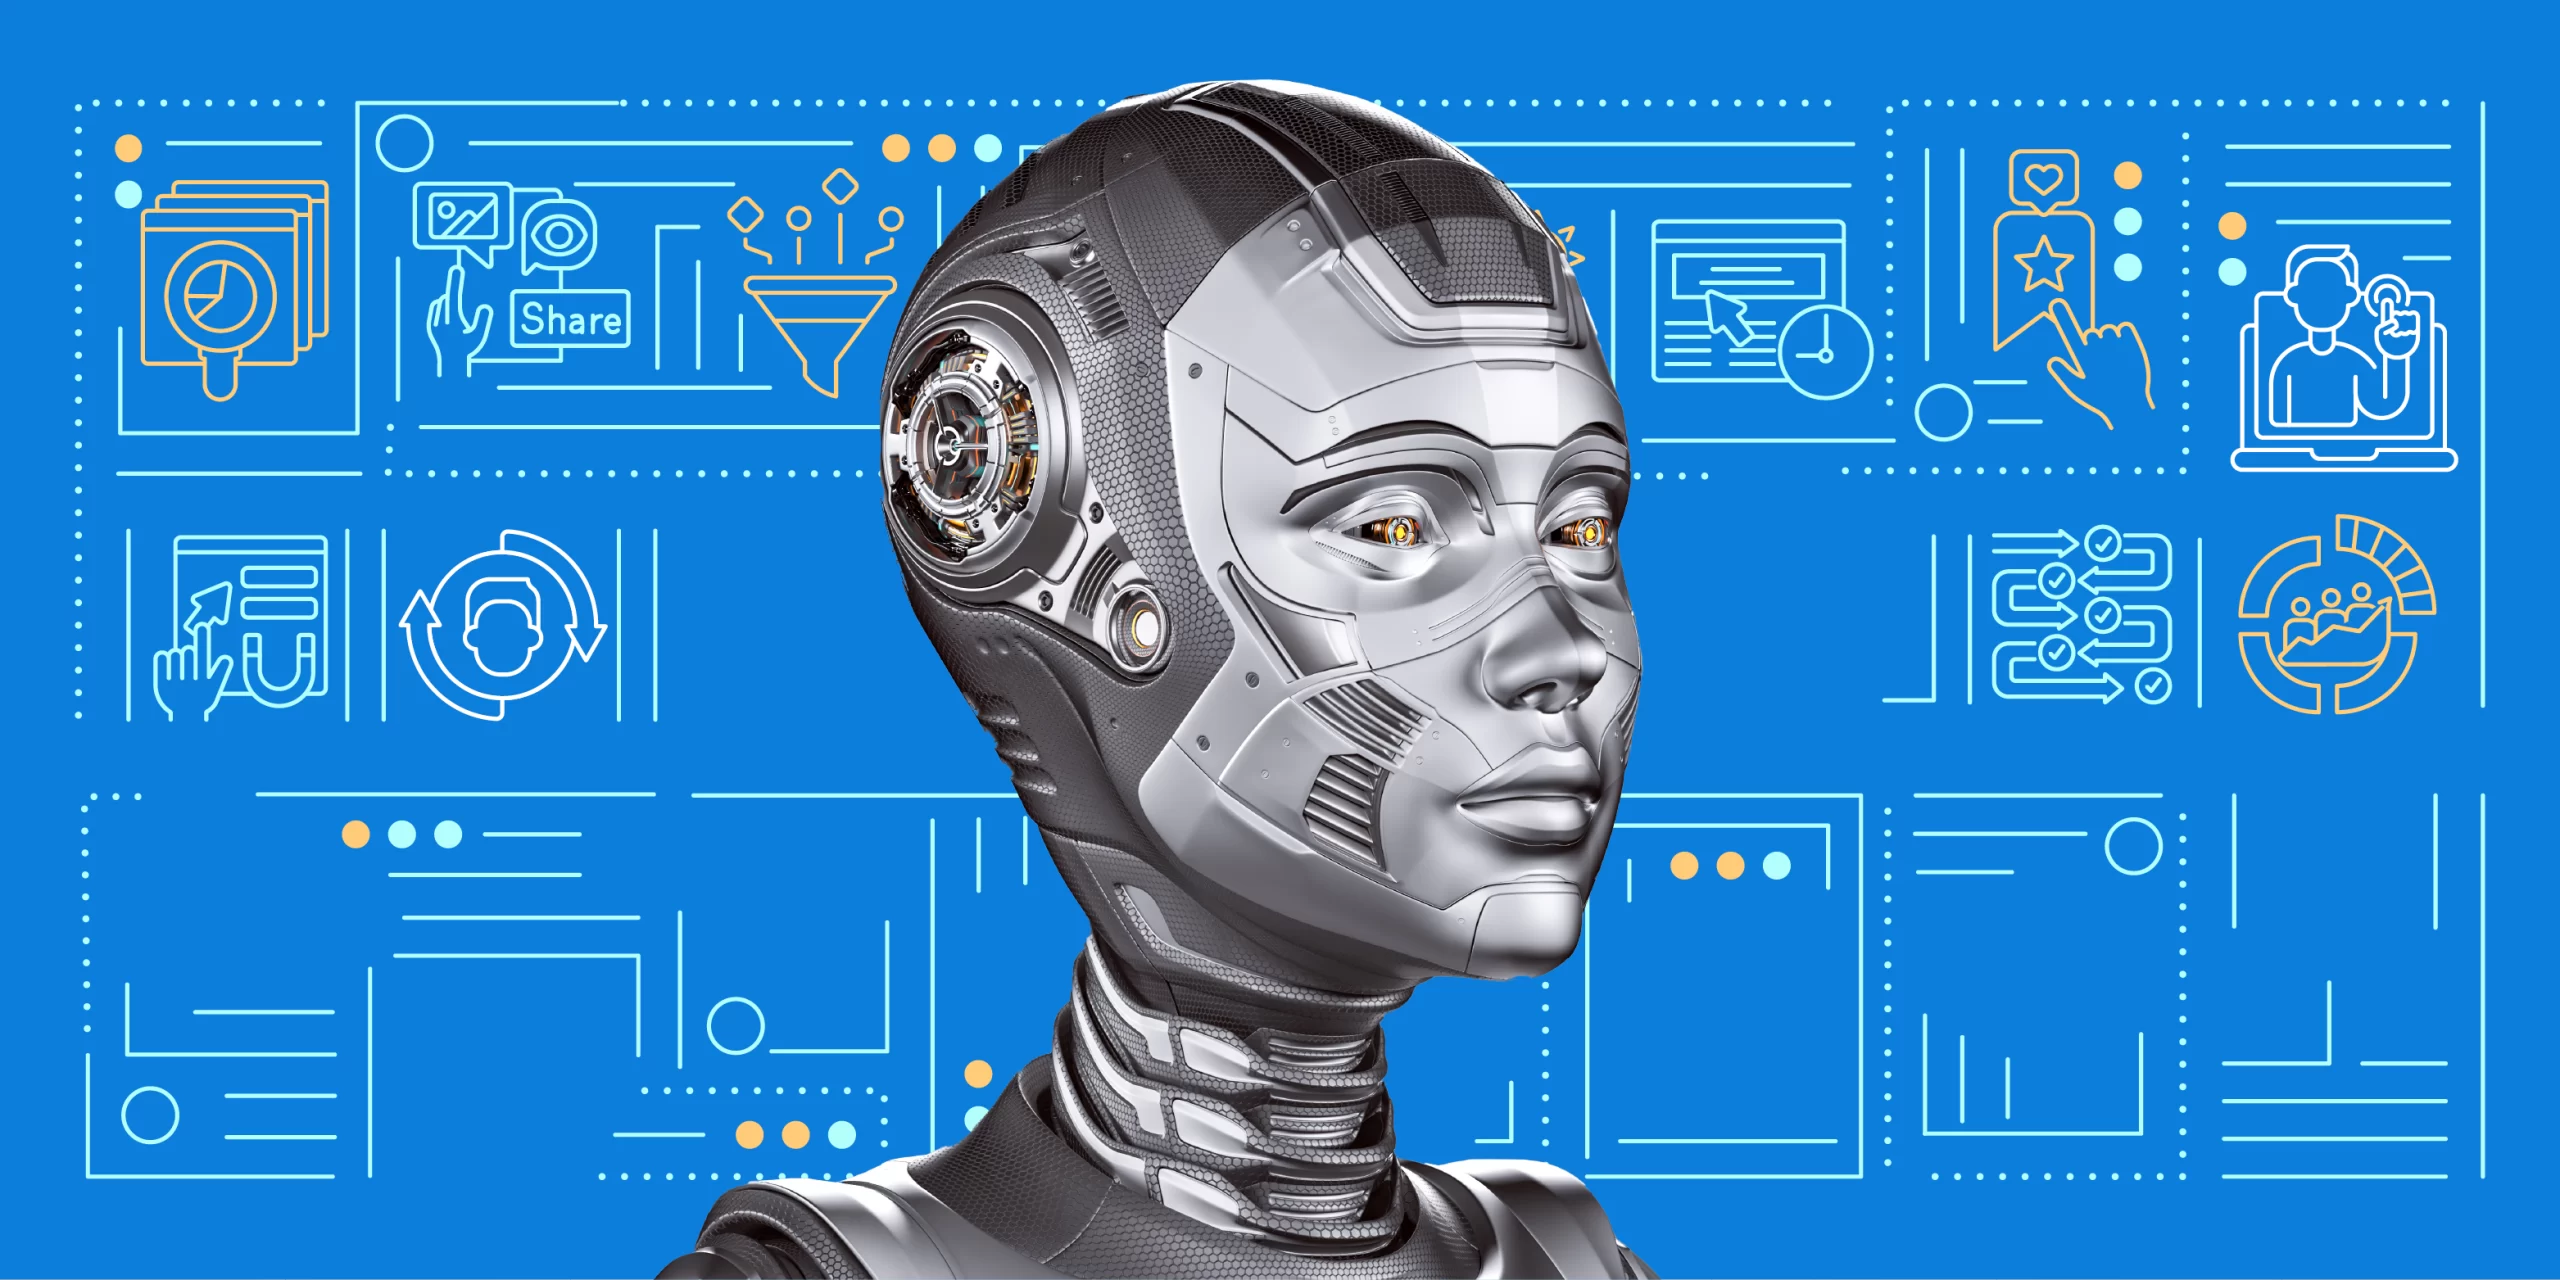 Imagem ilustrativa de um robô para representar inteligência artificial